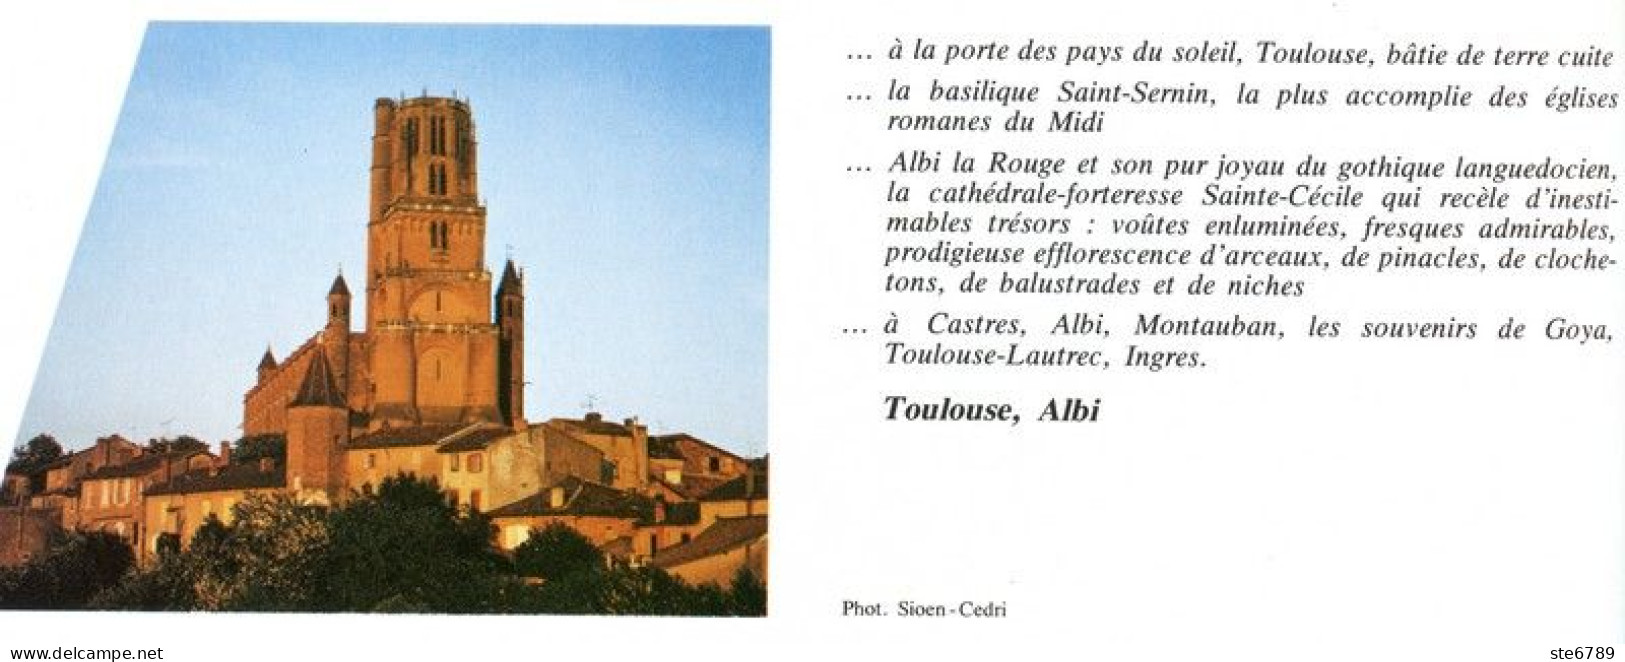 TOULOUSE ET ALBI  Revue Photos 1981 BEAUTES DE LA FRANCE N° 82 - Géographie